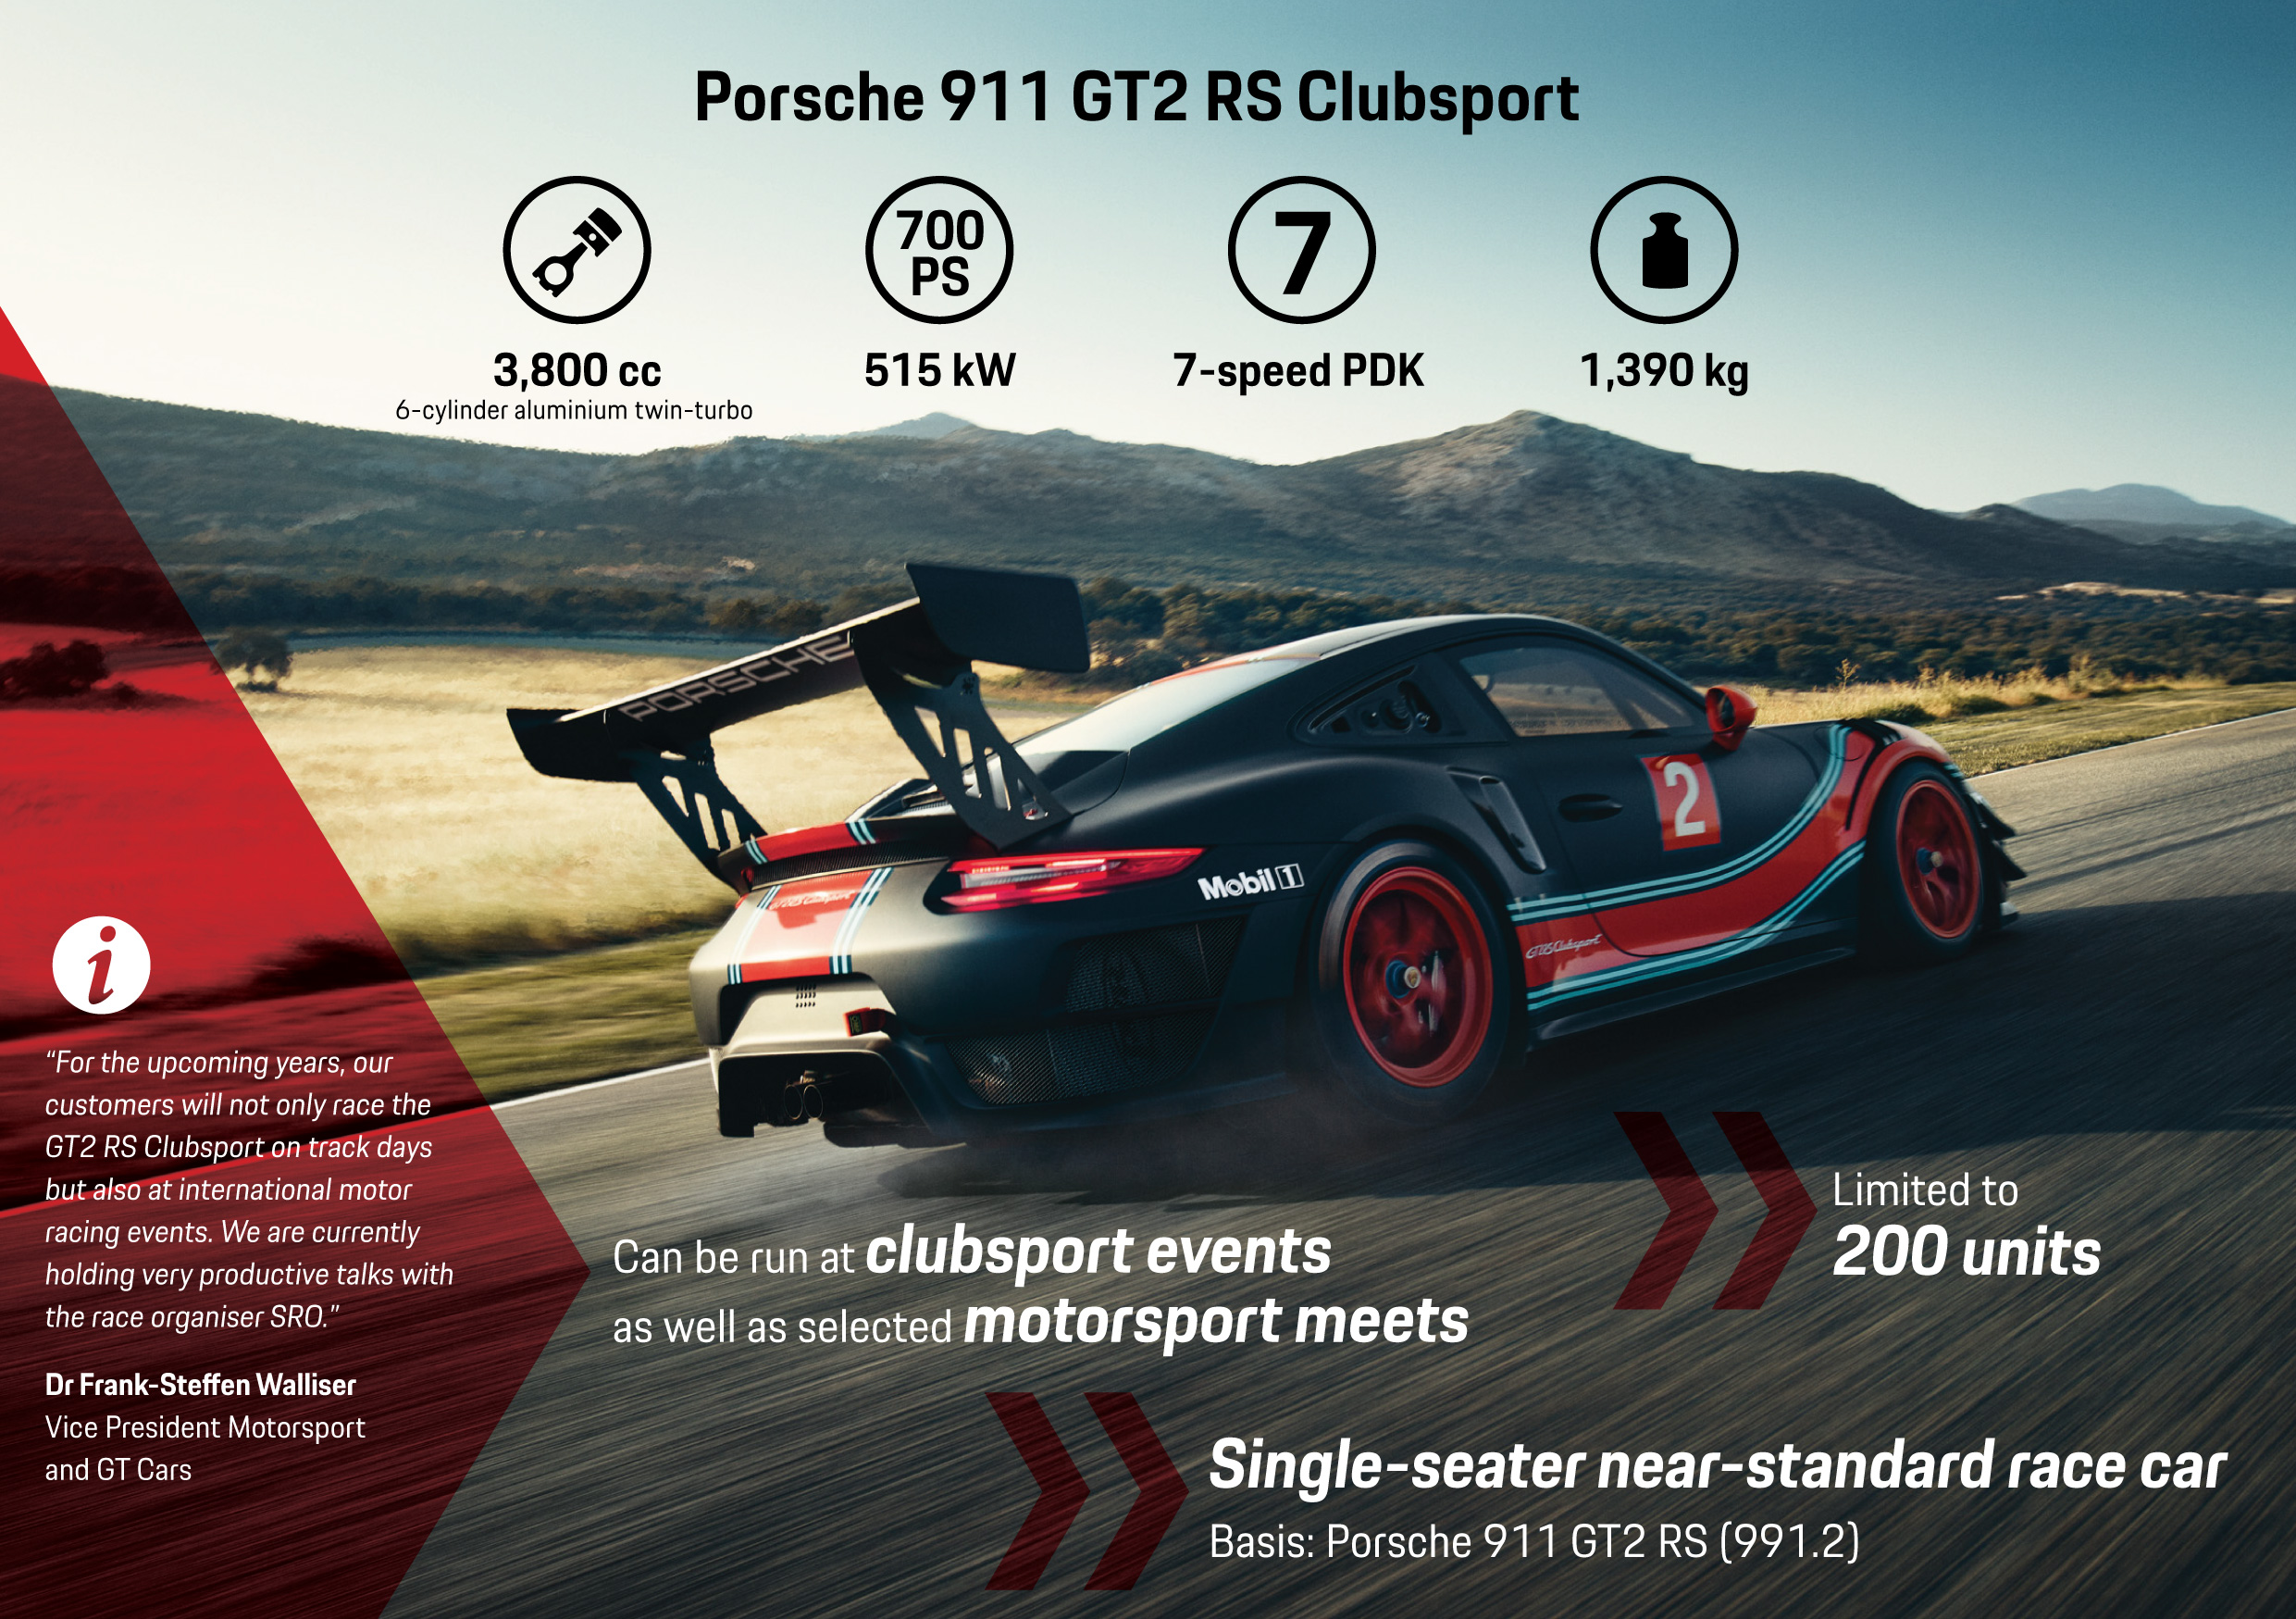 Porsche 911 GT2 RS Clubsport, infographic, 2018, Porsche AG